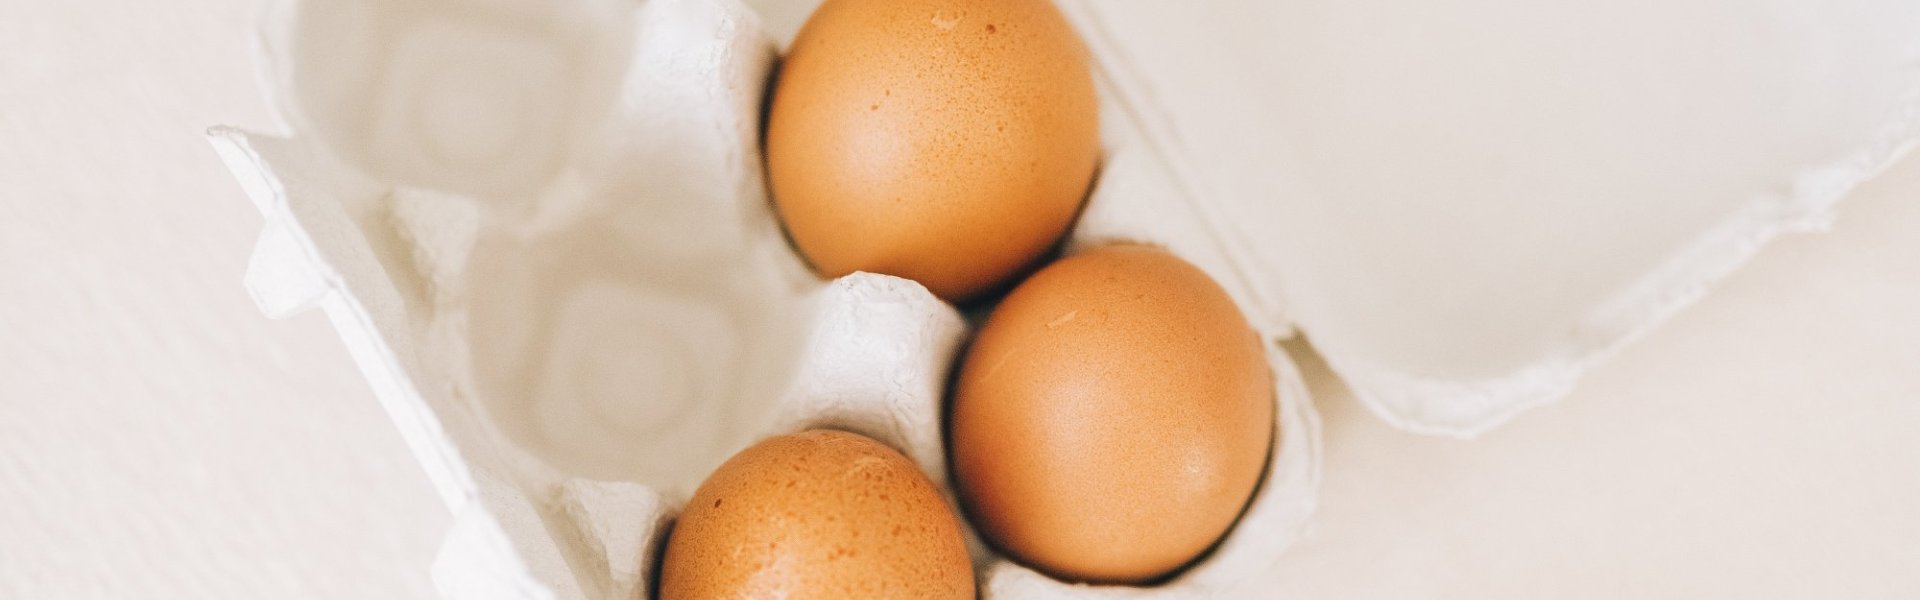 vervorming Alternatief Soms Eieren kopen: waar moet ik op letten? | Lekker van bij ons